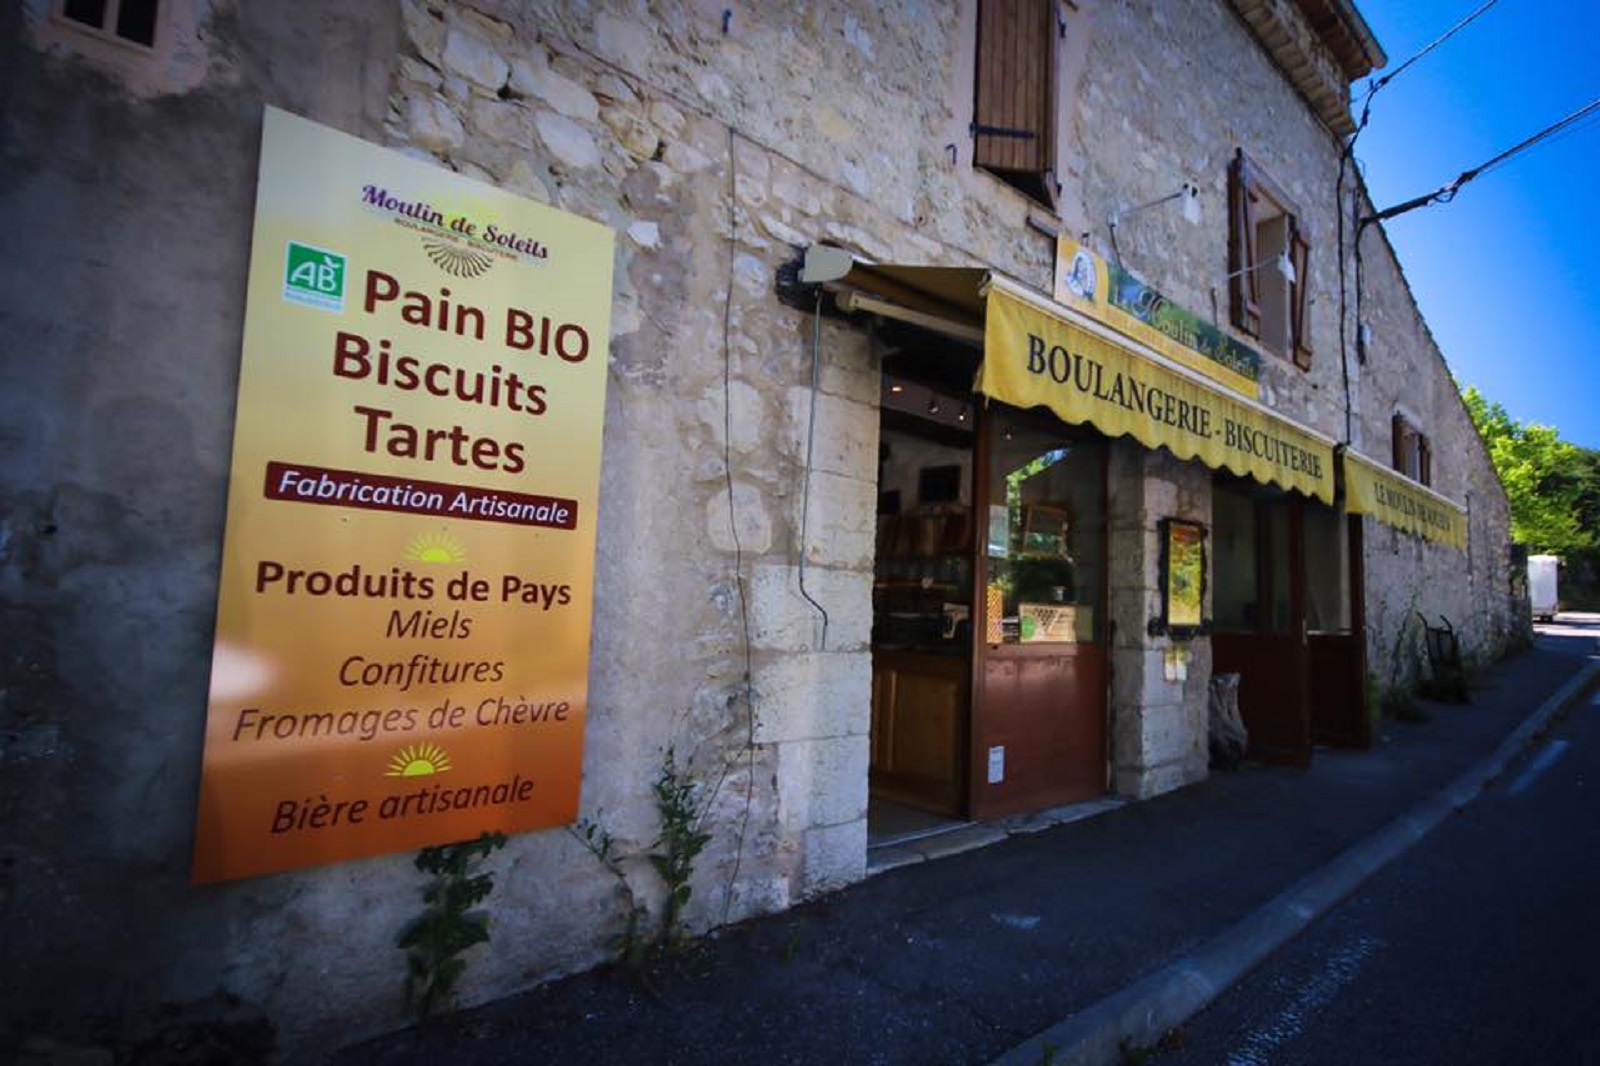 Boulangerie Moulin de Soleils